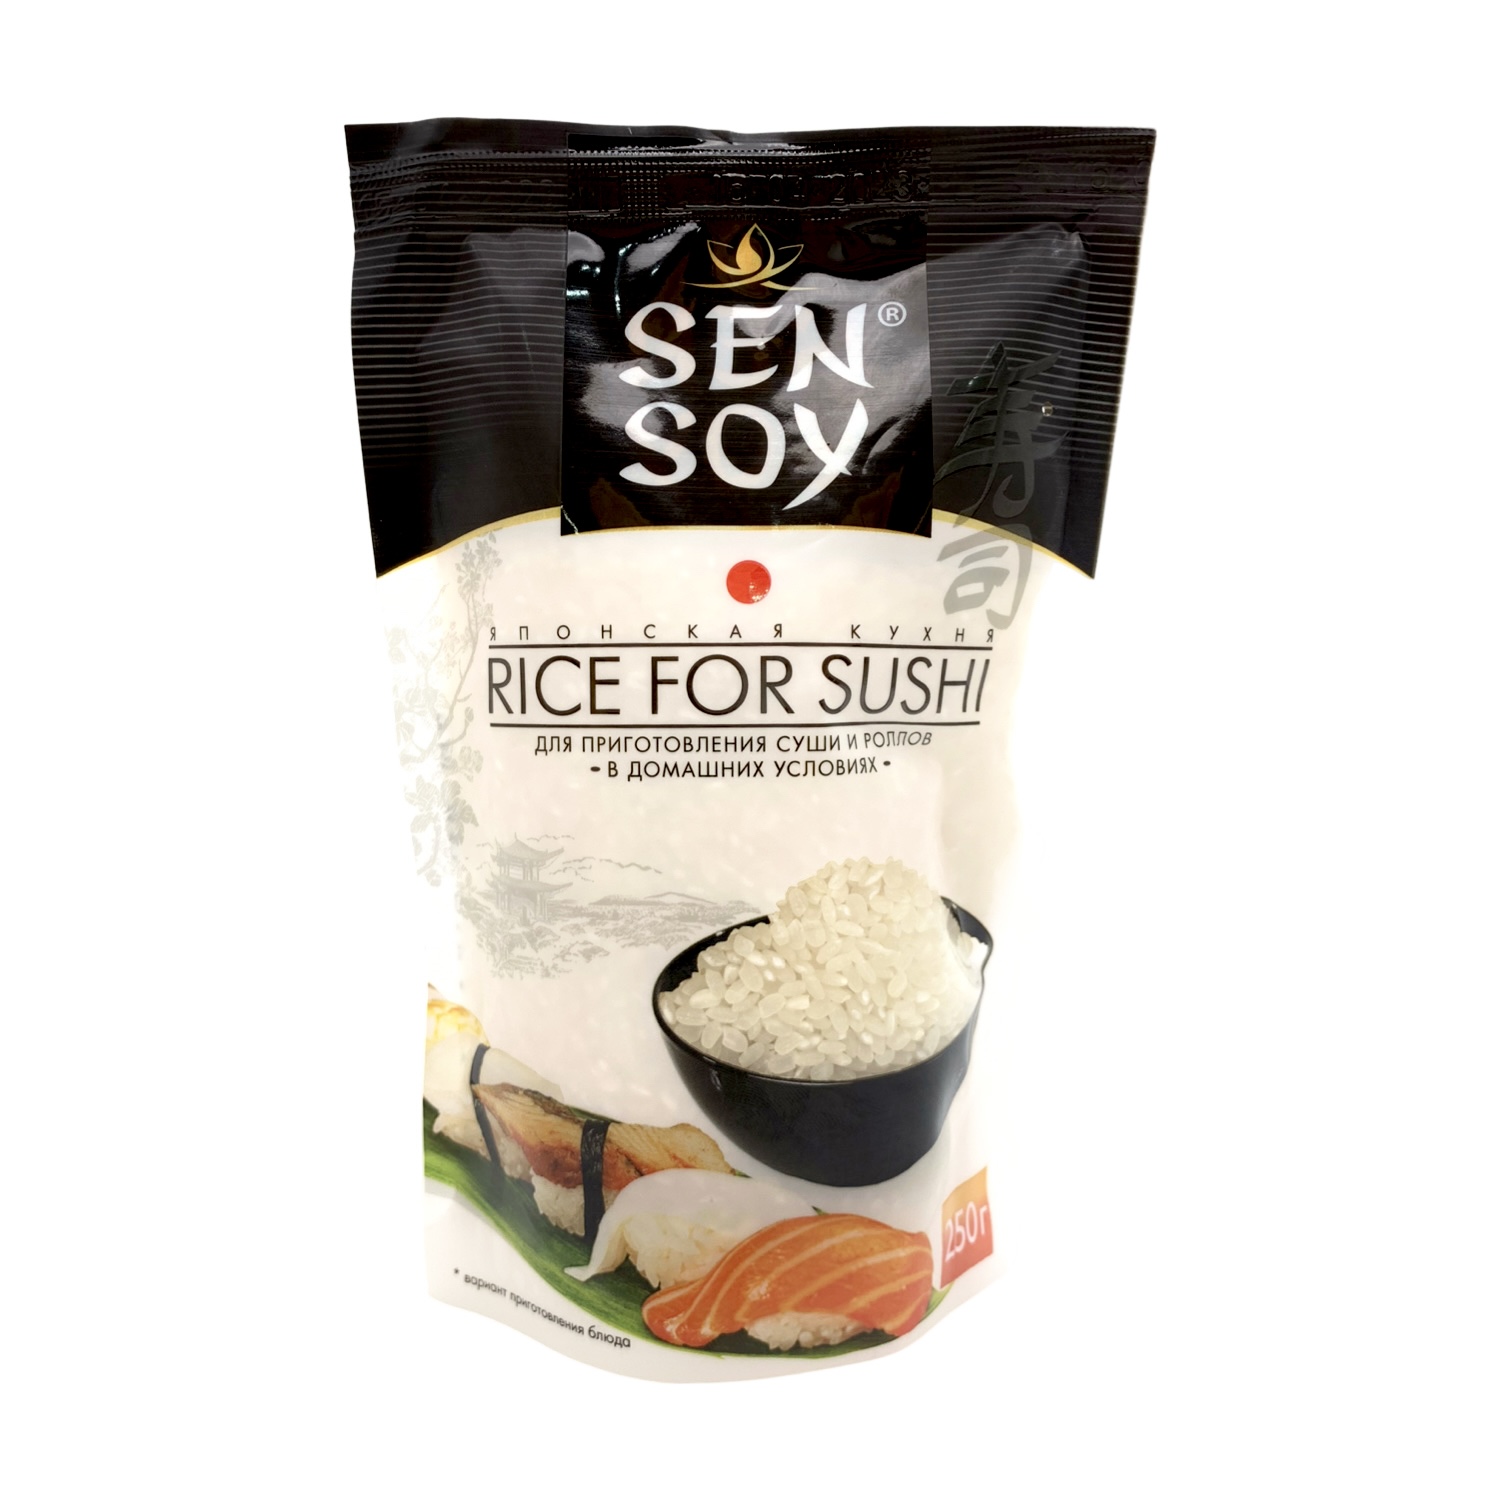 Рис для суши  короткозёрный непропаренный высший сорт Sen Soy, 250гр